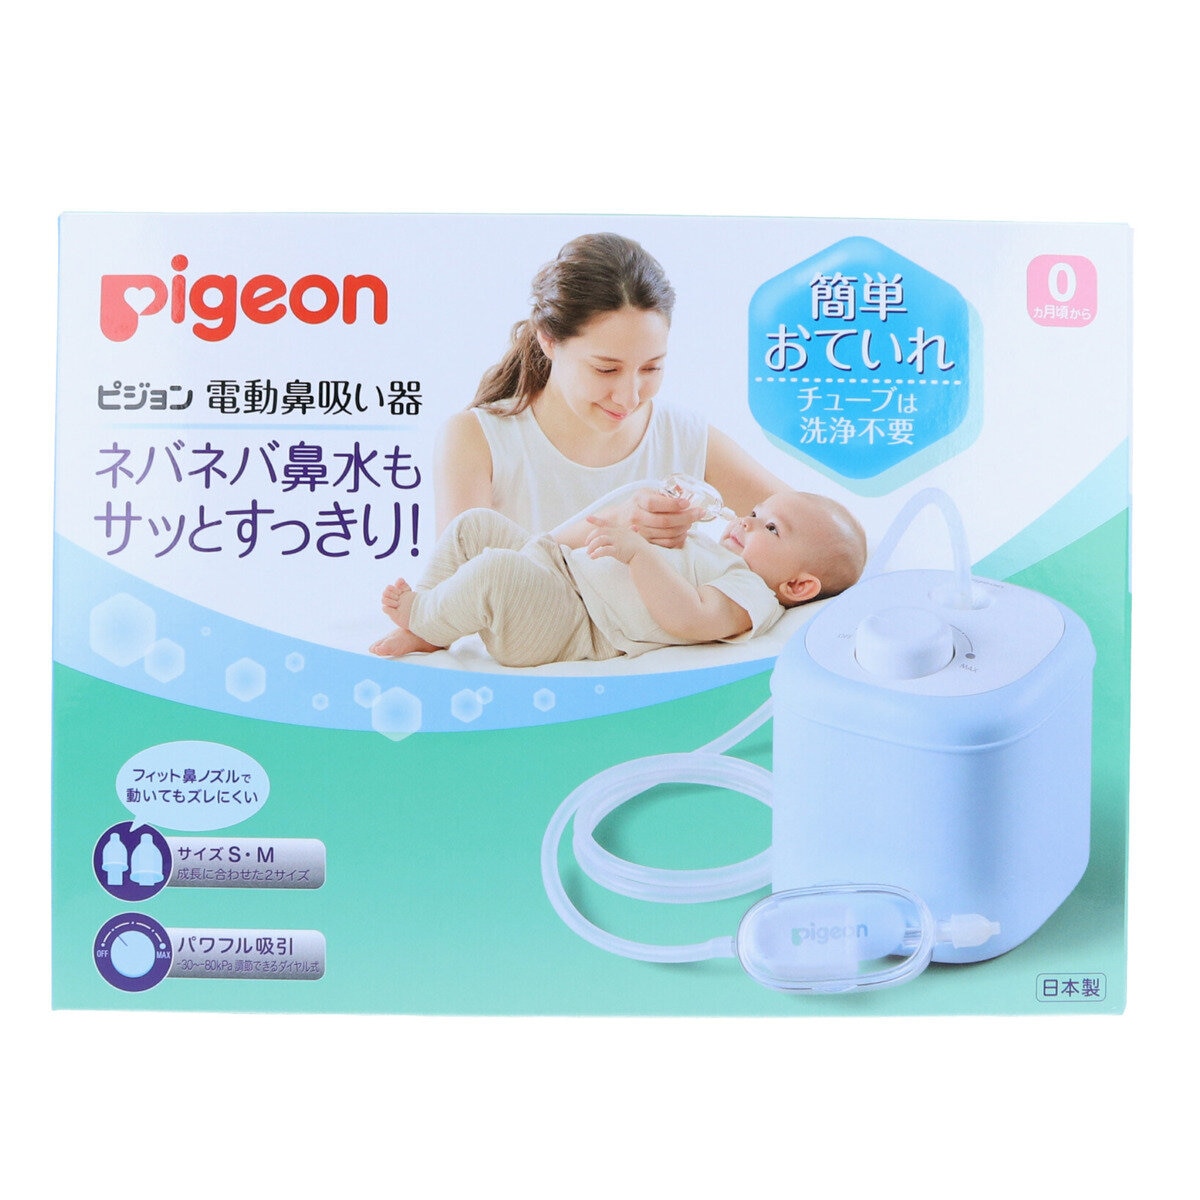 ピジョン 電動鼻吸い器 | Costco Japan